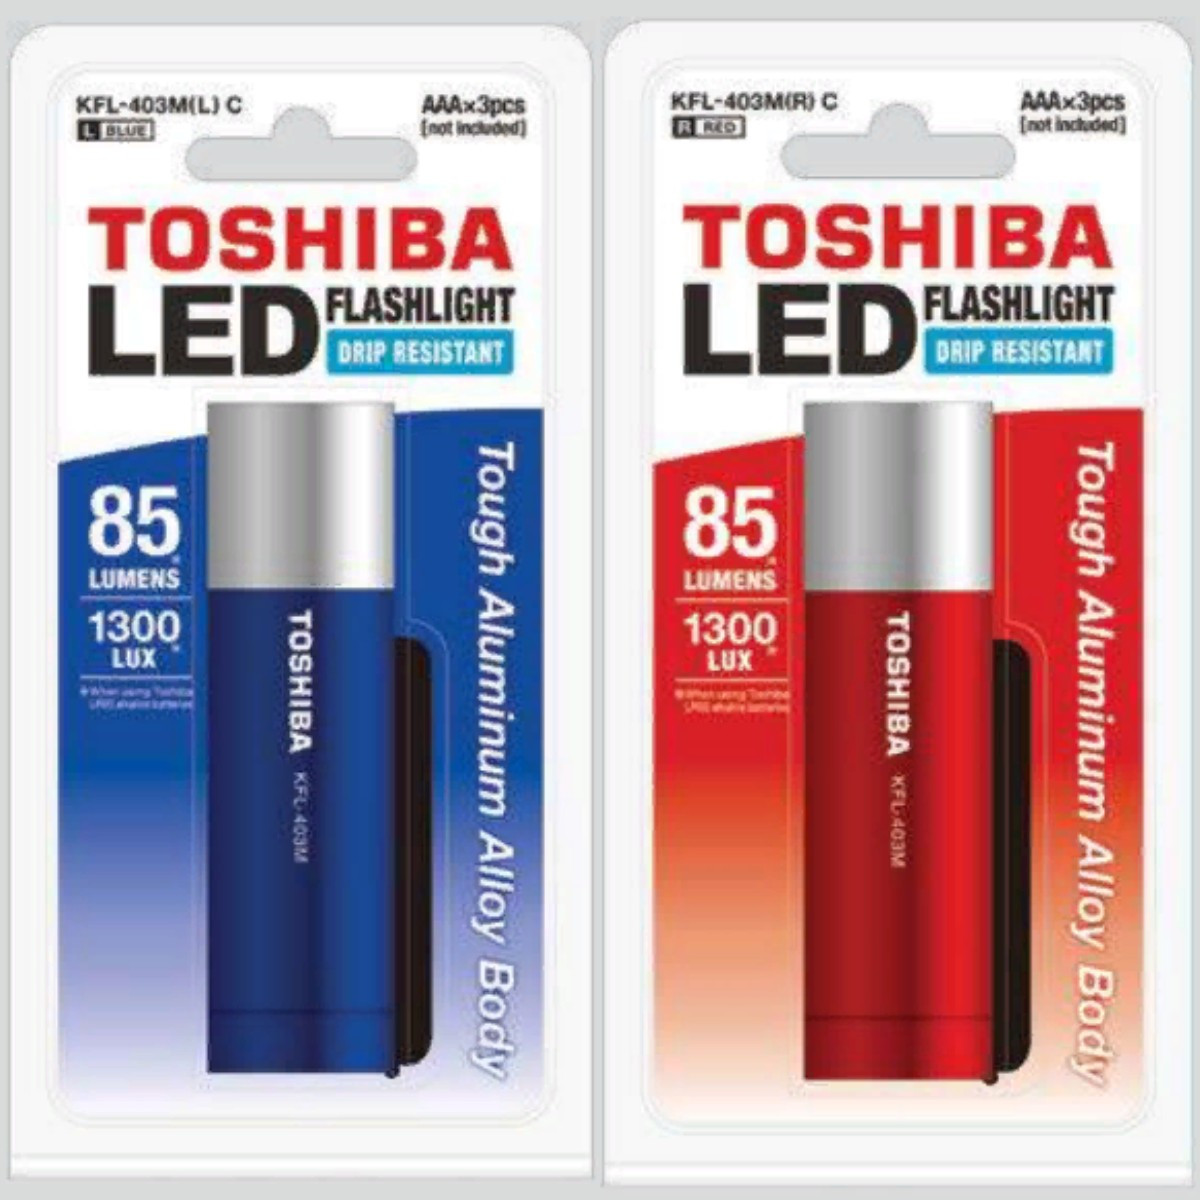 Toshiba MINI Led Flashlight KFL-403M(R) C BP, Mini LED KFL-403M(L) C BP, фото 1